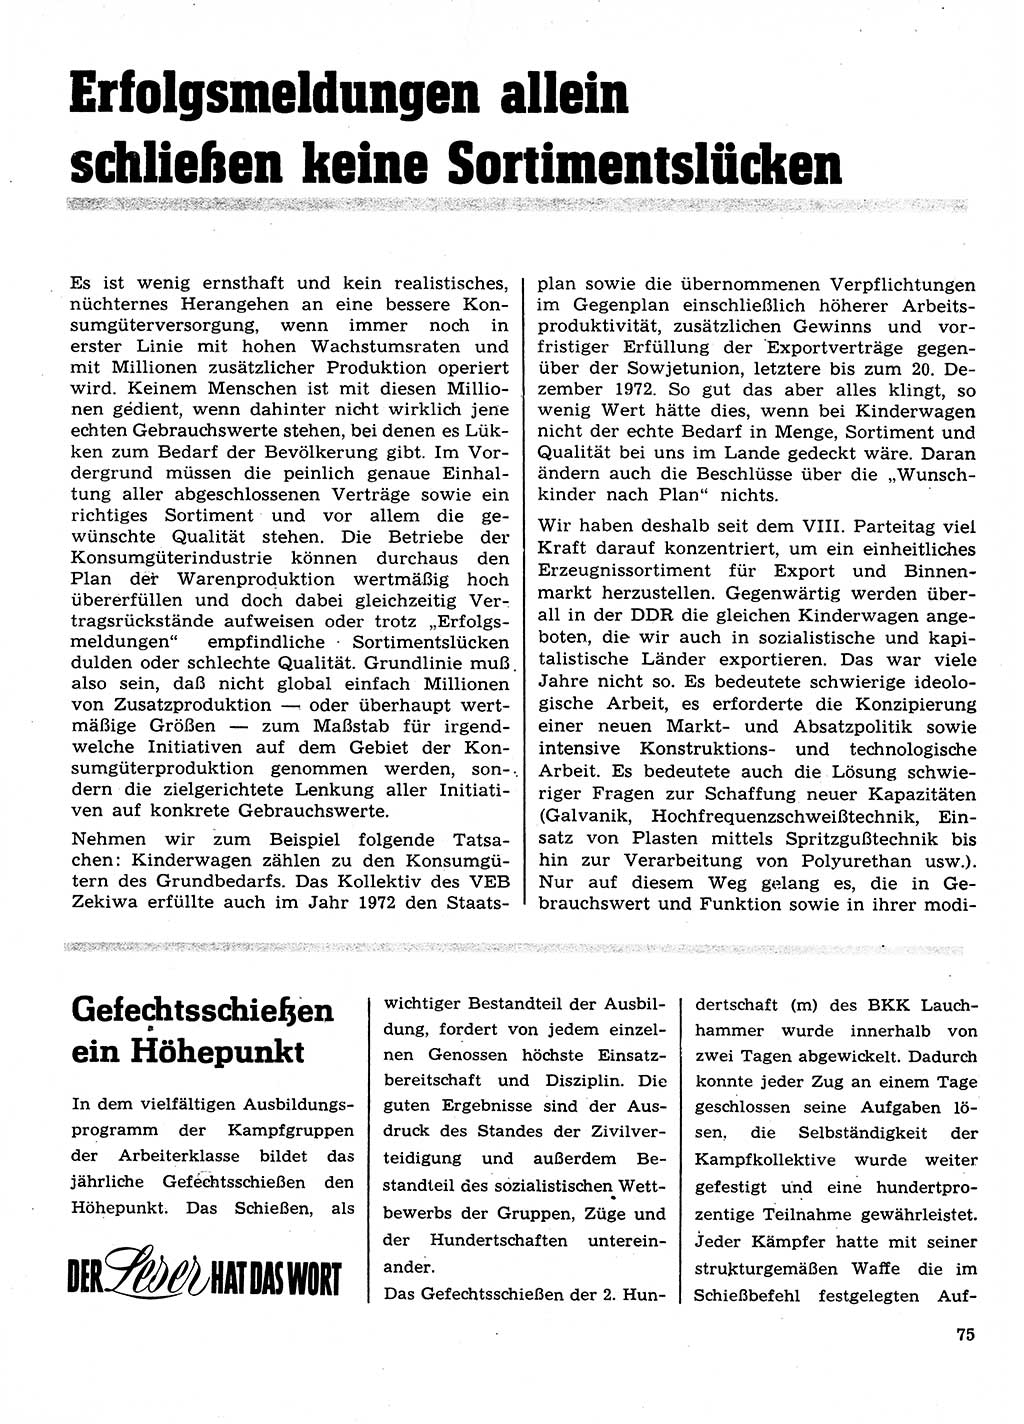 Neuer Weg (NW), Organ des Zentralkomitees (ZK) der SED (Sozialistische Einheitspartei Deutschlands) für Fragen des Parteilebens, 28. Jahrgang [Deutsche Demokratische Republik (DDR)] 1973, Seite 75 (NW ZK SED DDR 1973, S. 75)